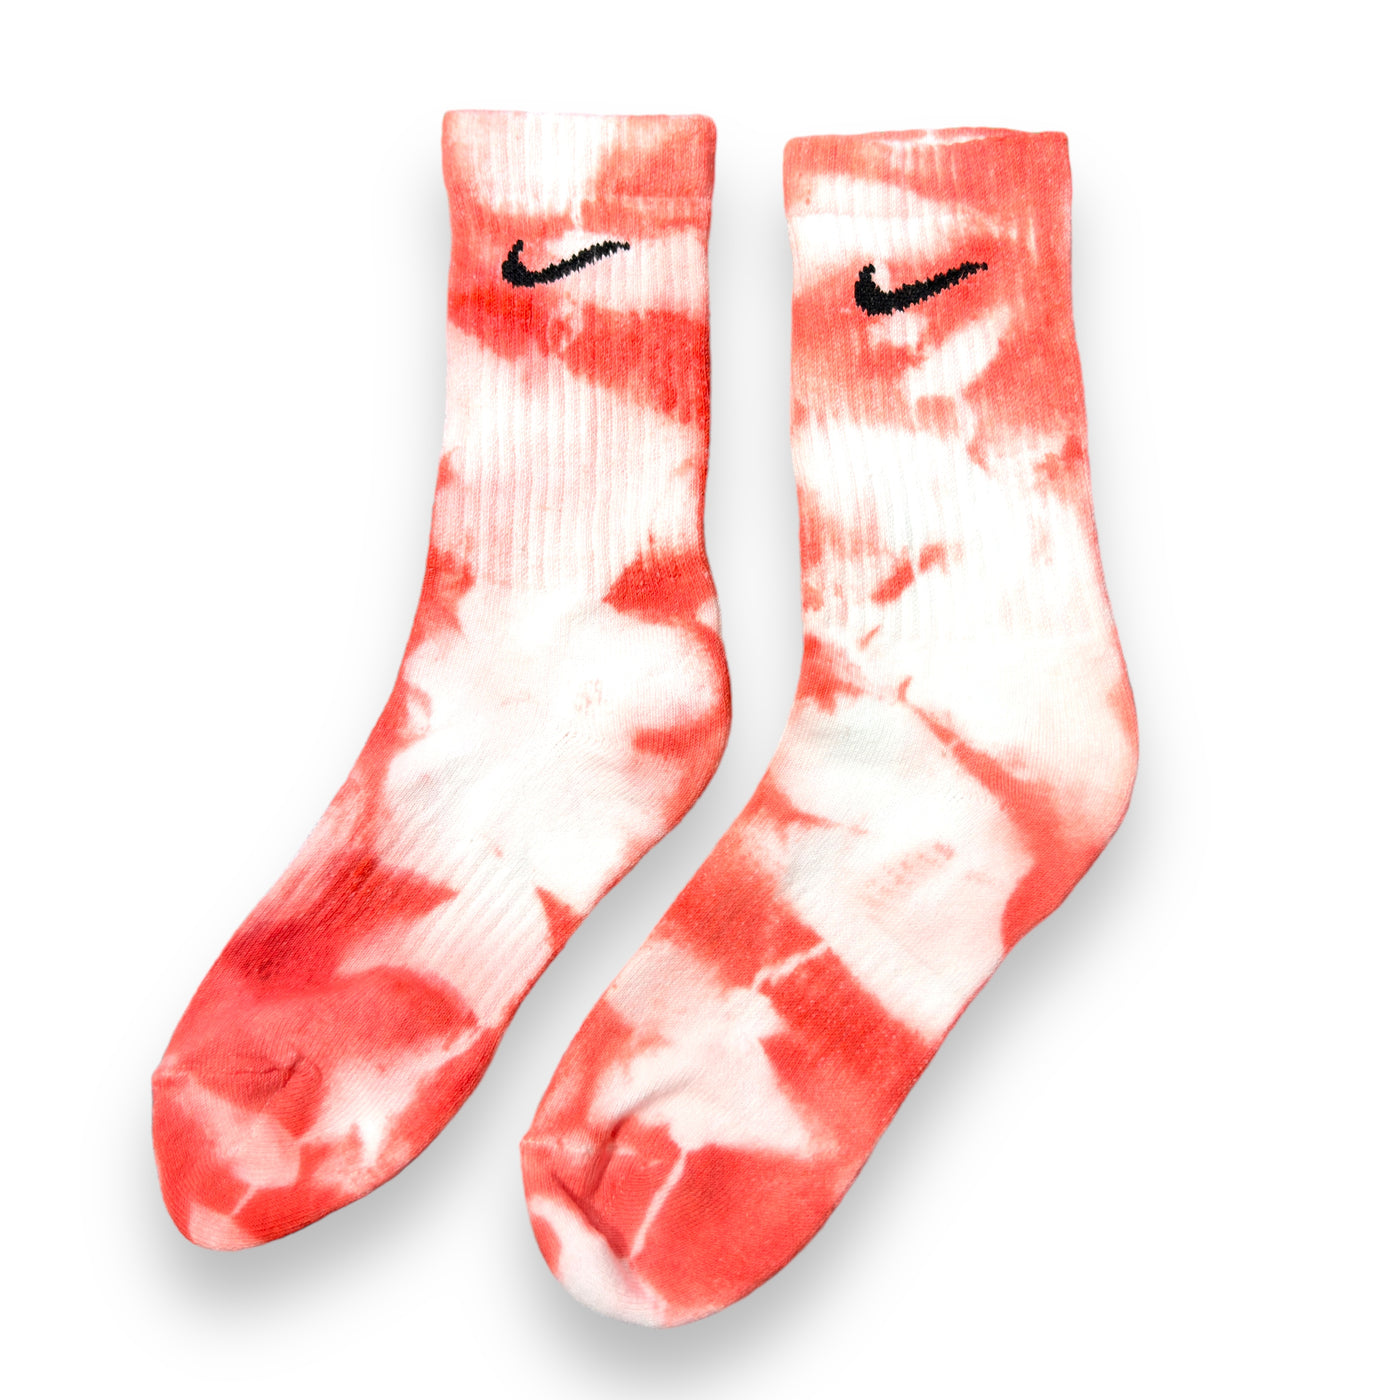 Calzini Nike Tie-Dye Rosso (1 paio)